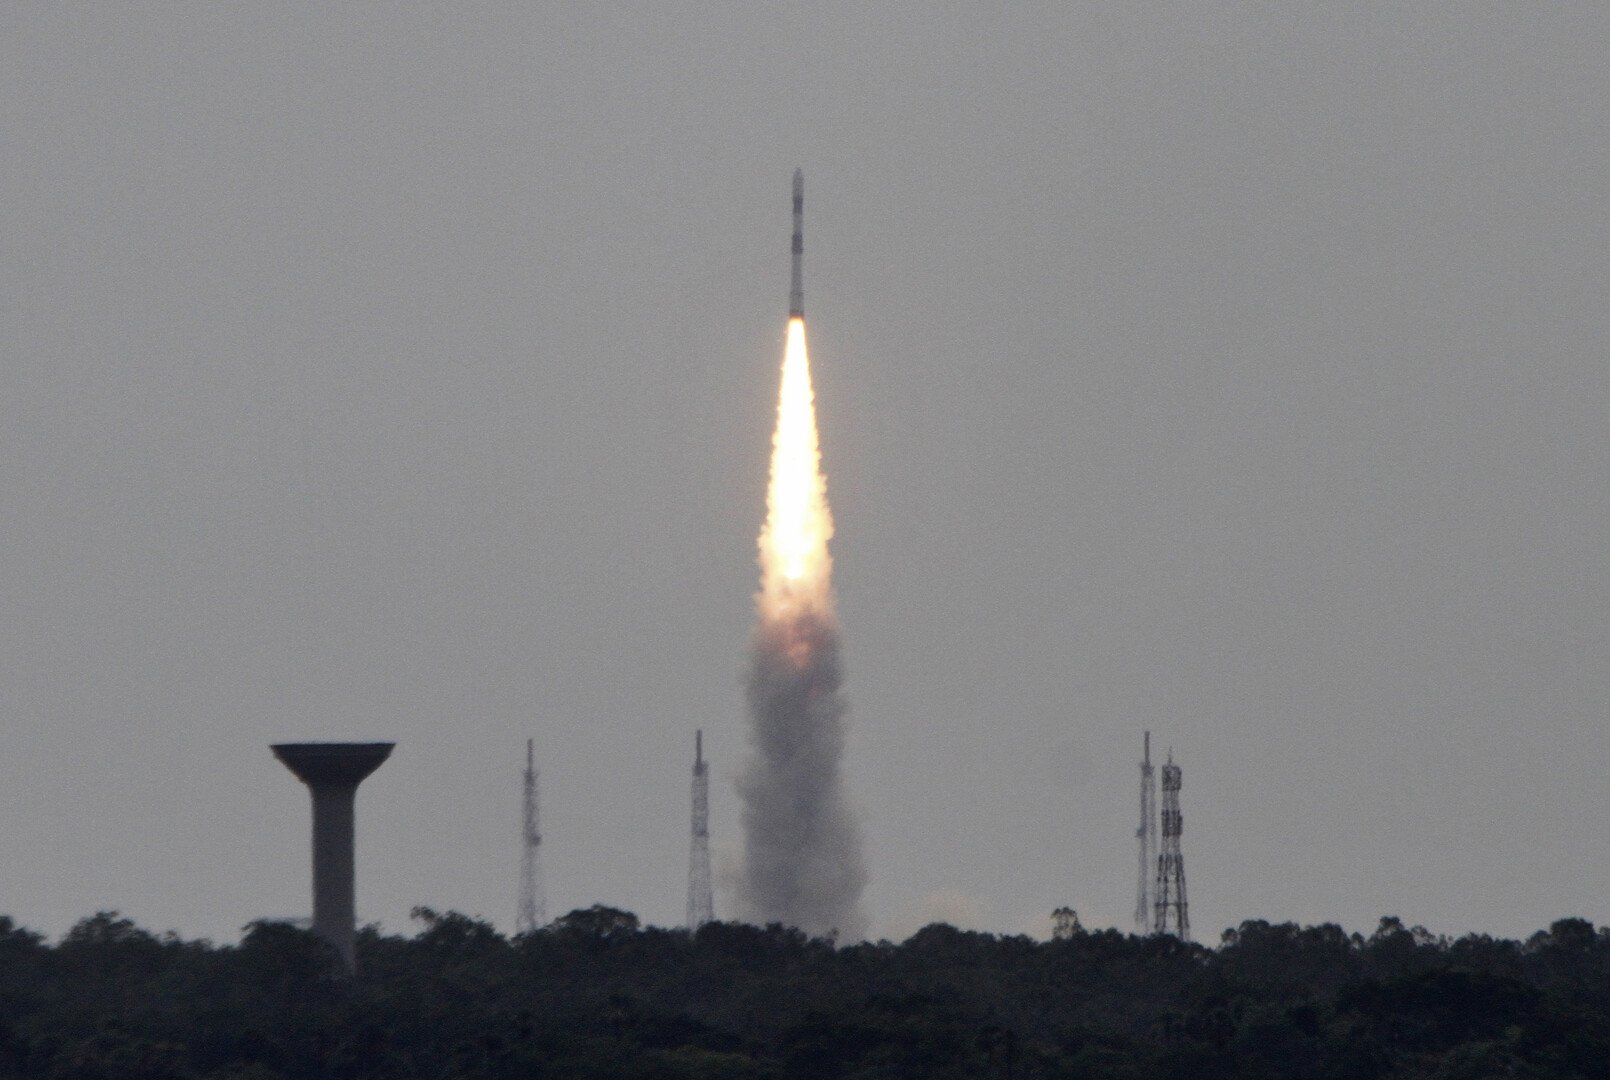 الهند تفقد الاتصال بمركبة غير مأهولة أرسلتها إلى القمر